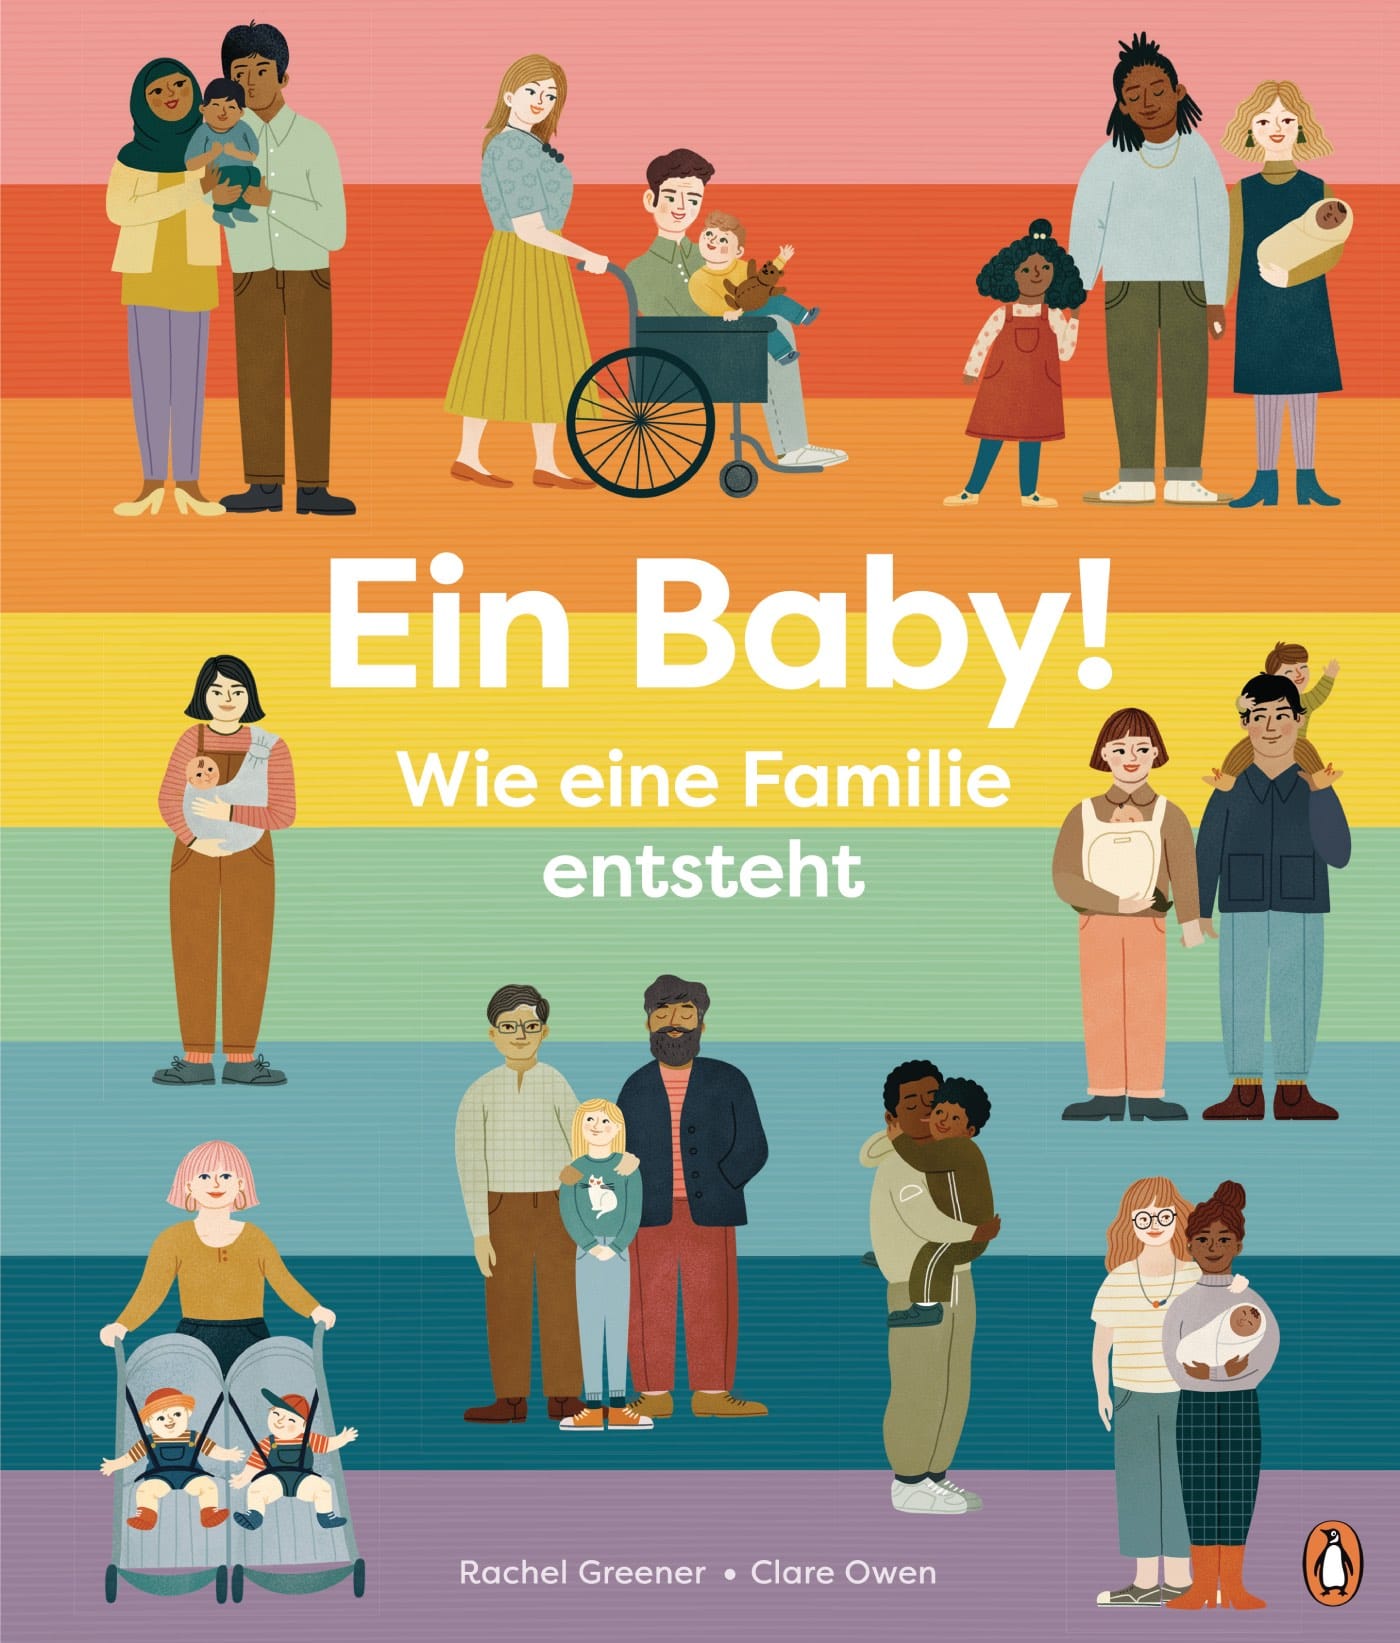 Kindersachbuch über Schwangerschaft: Wie eine Familie entsteht // HIMBEER